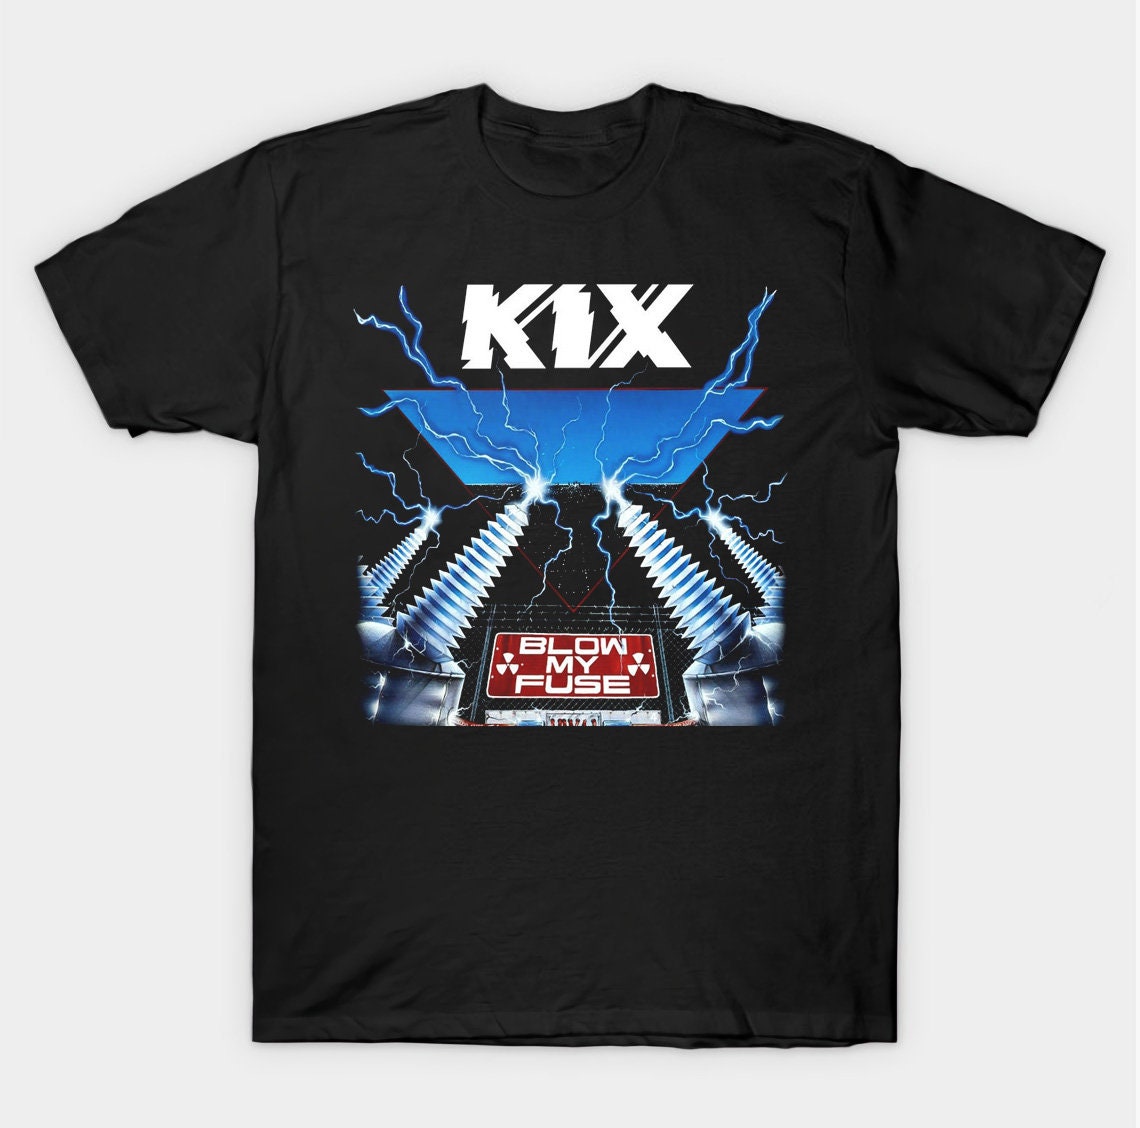 Kix Vintage T Shirt Metal Music Shirt Aesthetic Shirt Clothing T-shirt  Metal Tees Throwback Style Retro 